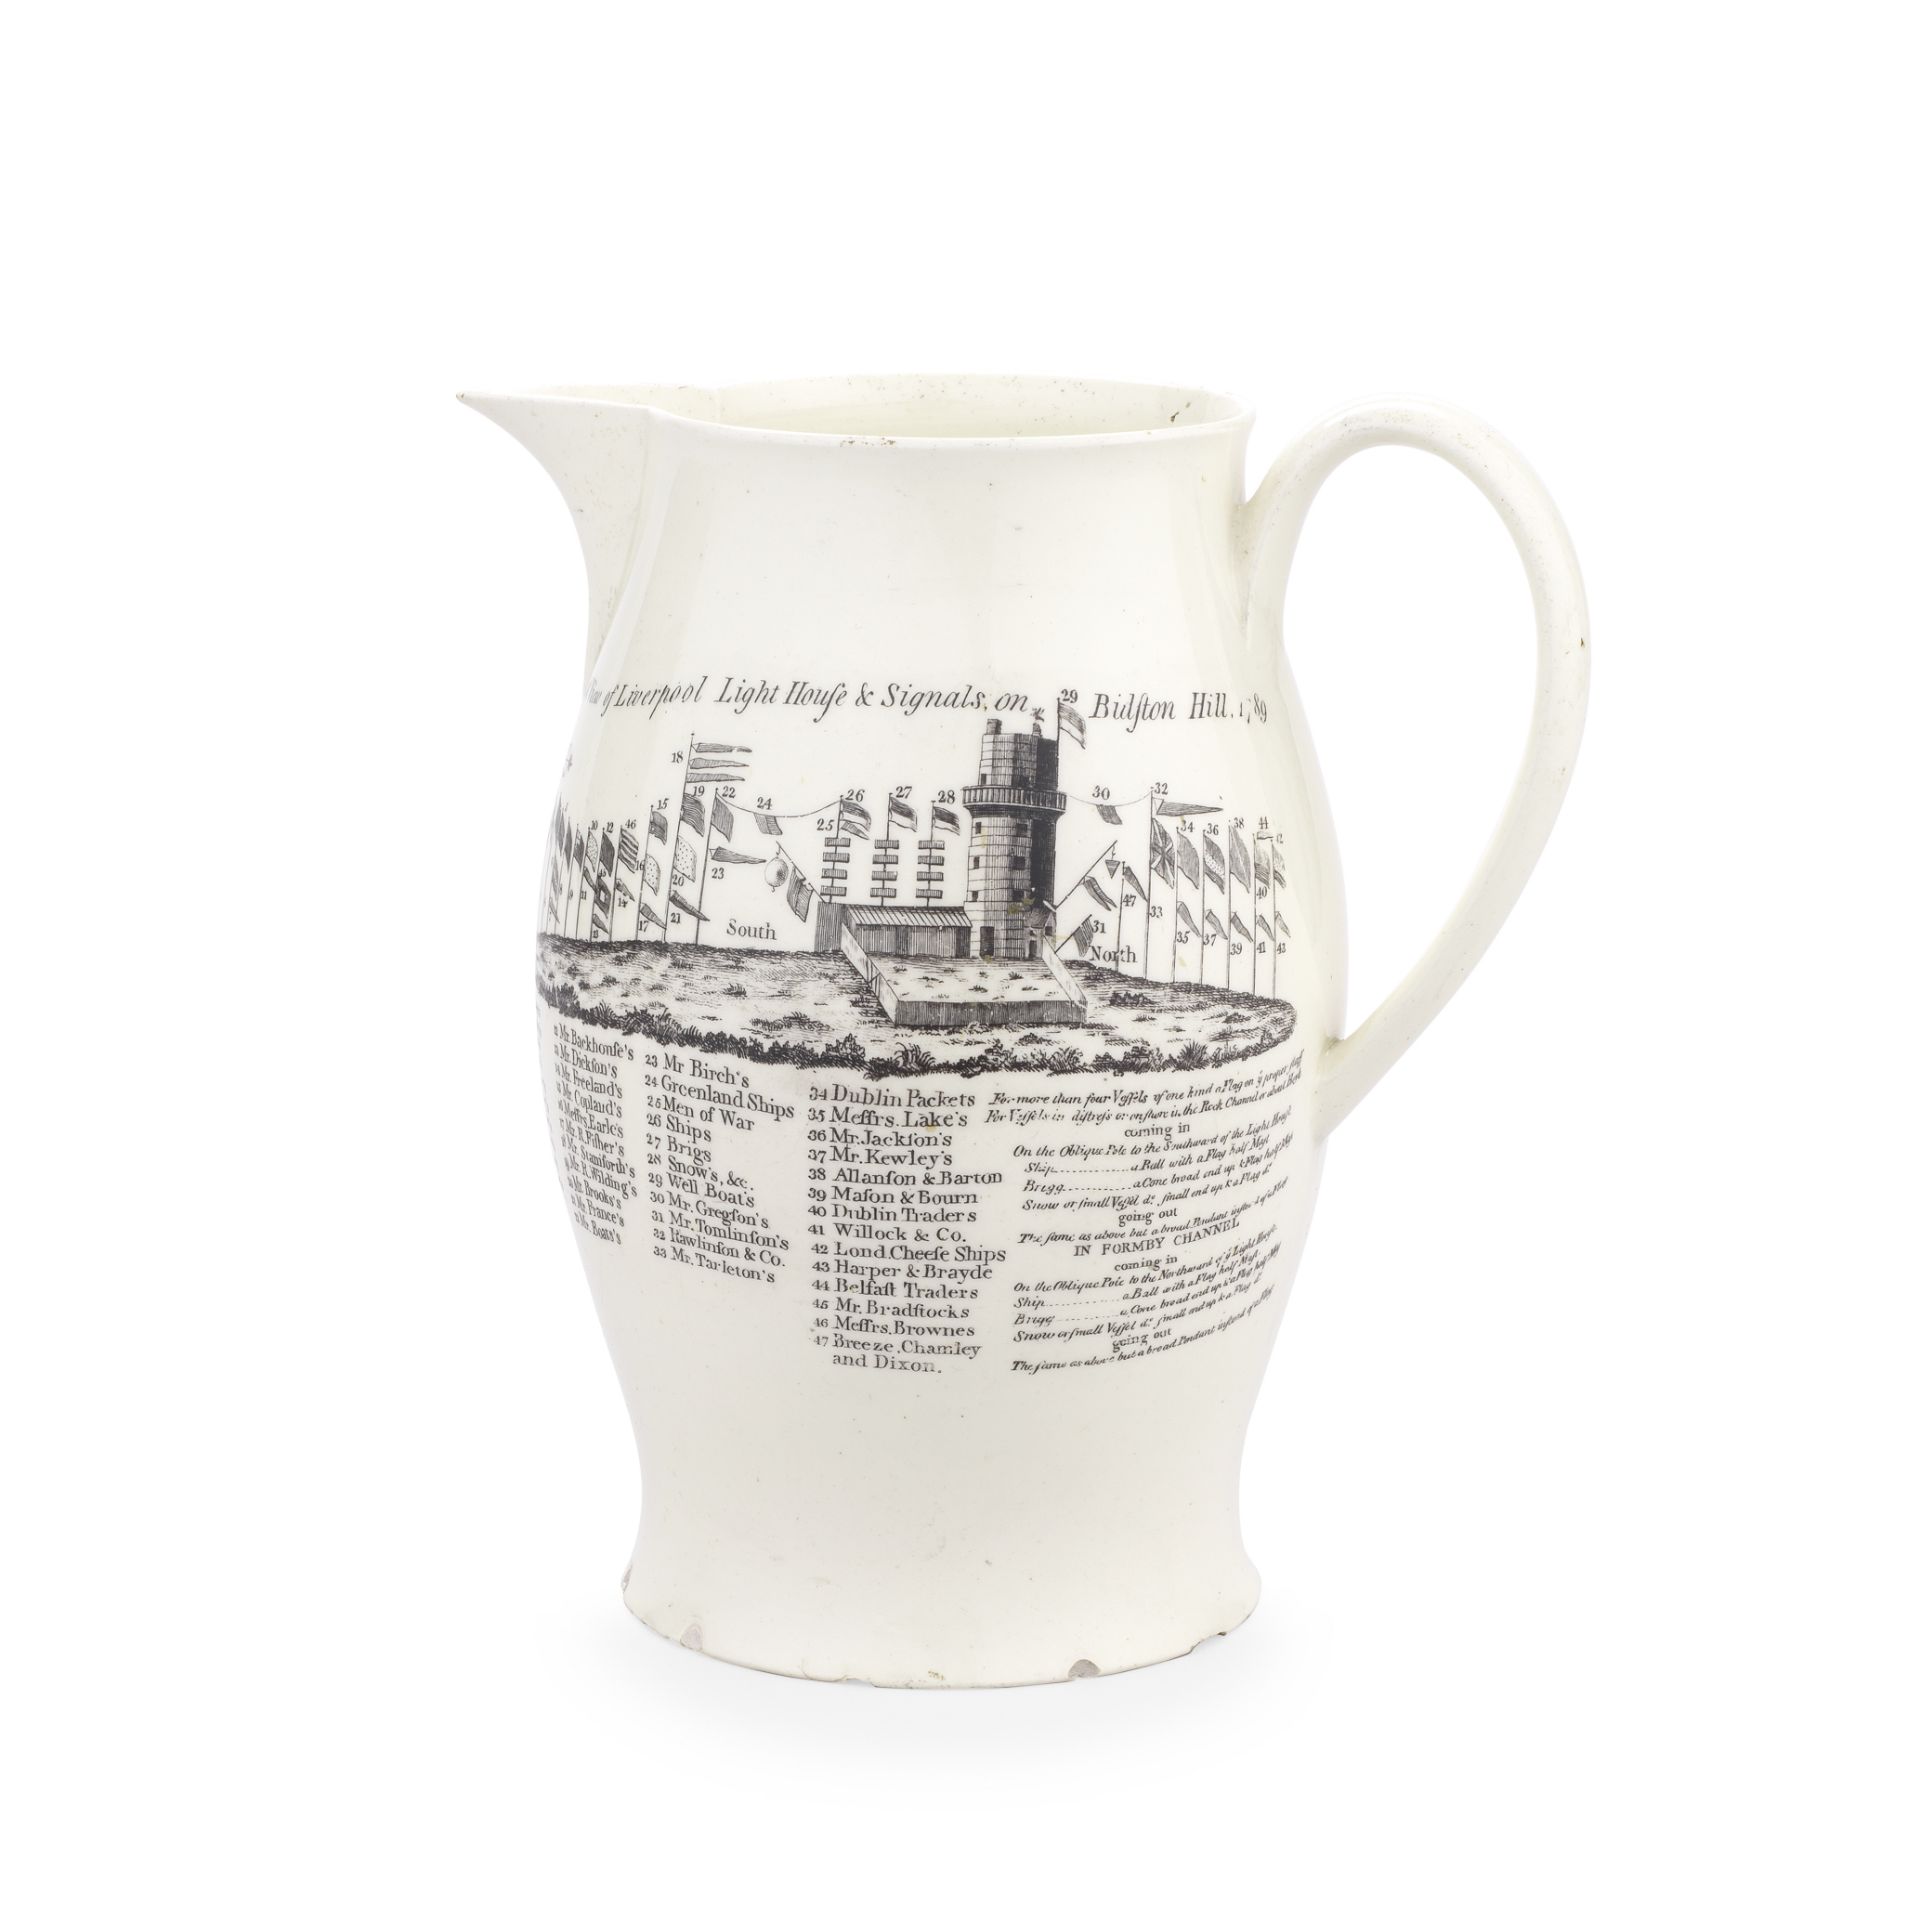 A rare Liverpool-printed creamware Bidston Hill jug, circa 1789